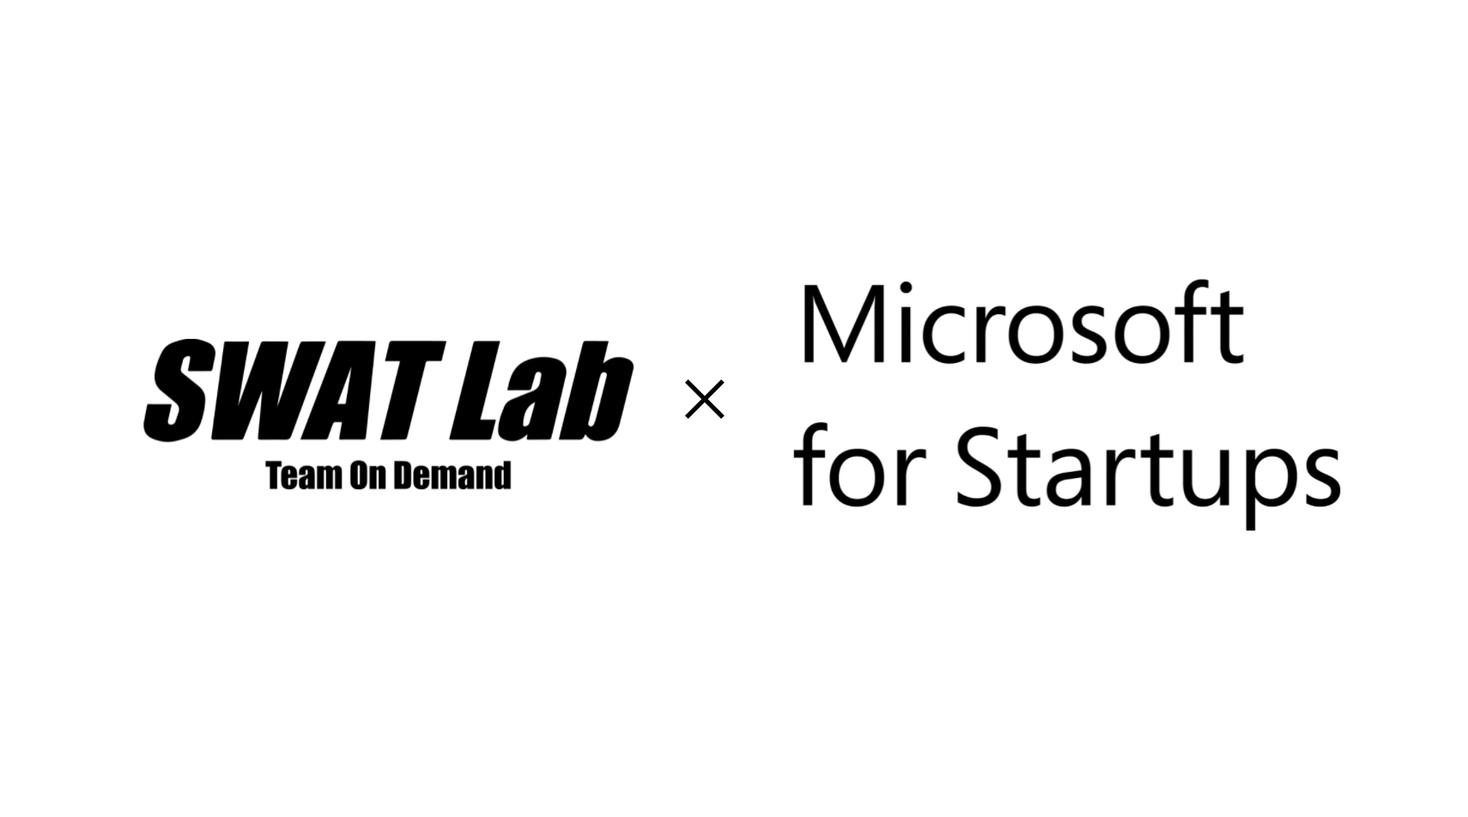 株式会社SWAT Labがマイクロソフト社の”Microsoft for Startups”に採択